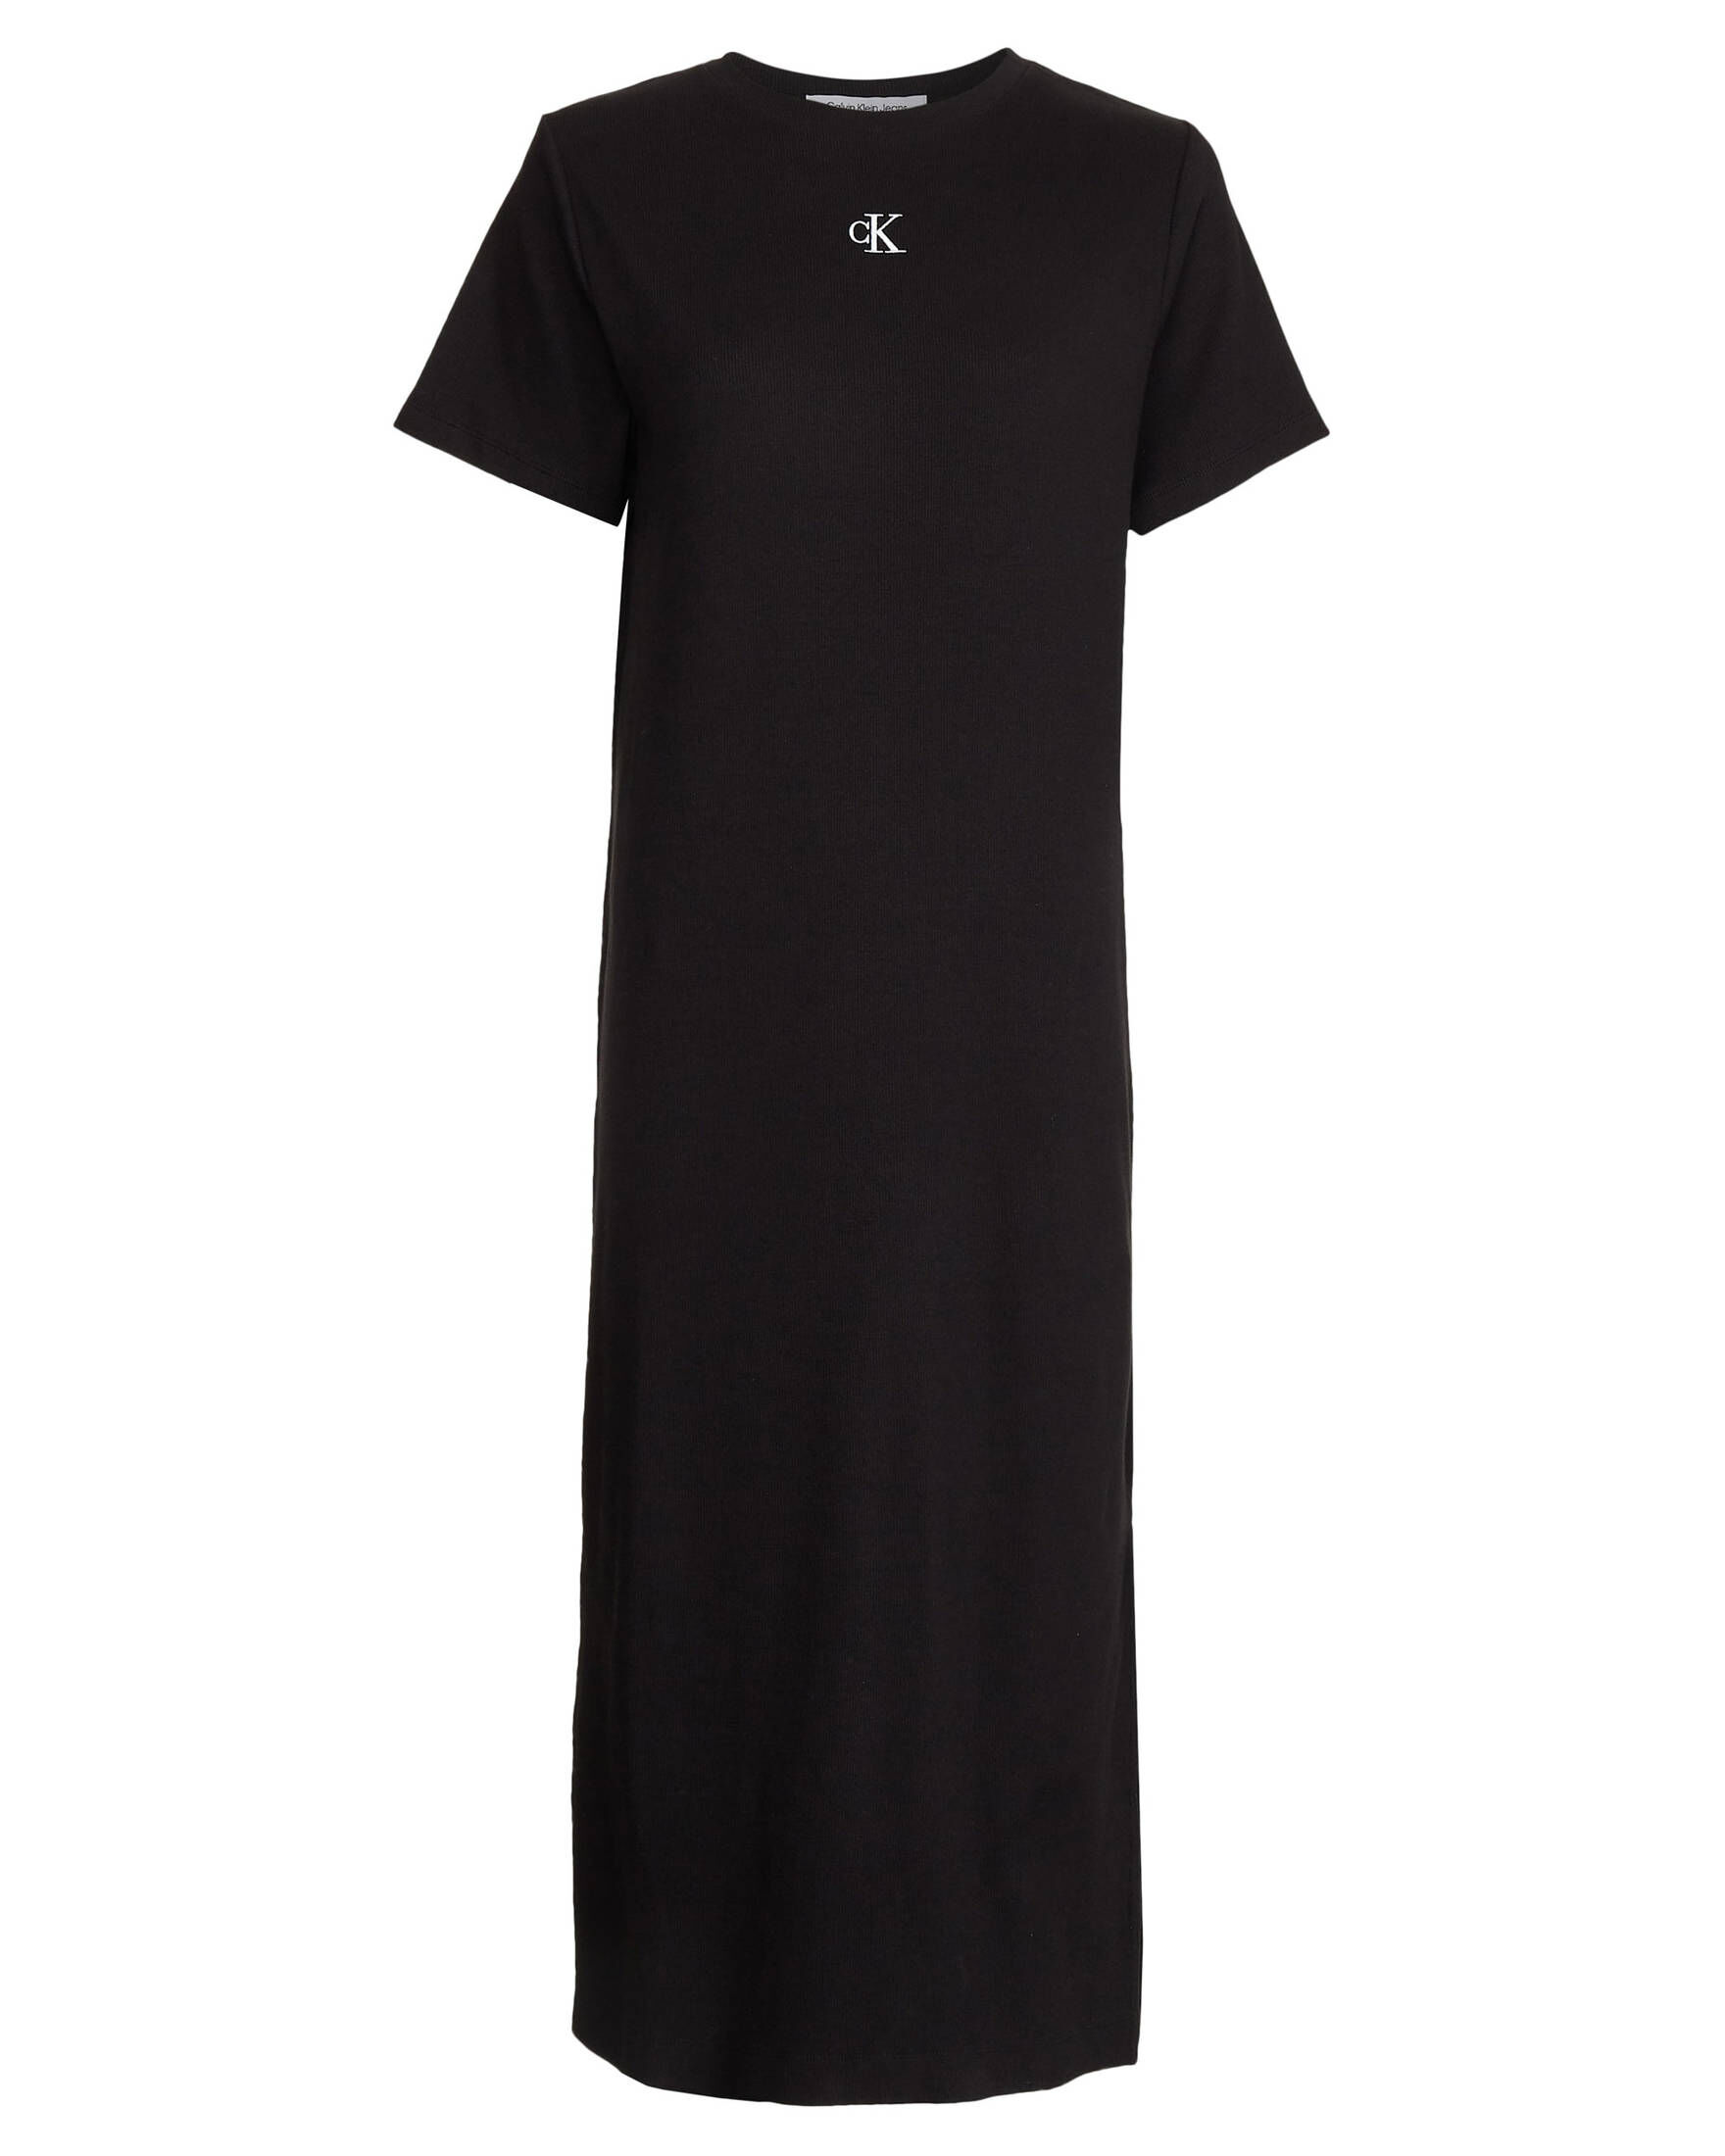 KLEIN LONG RIB DRESS CALVIN Damen Kleid engelhorn JEANS | CK T-SHIRT kaufen